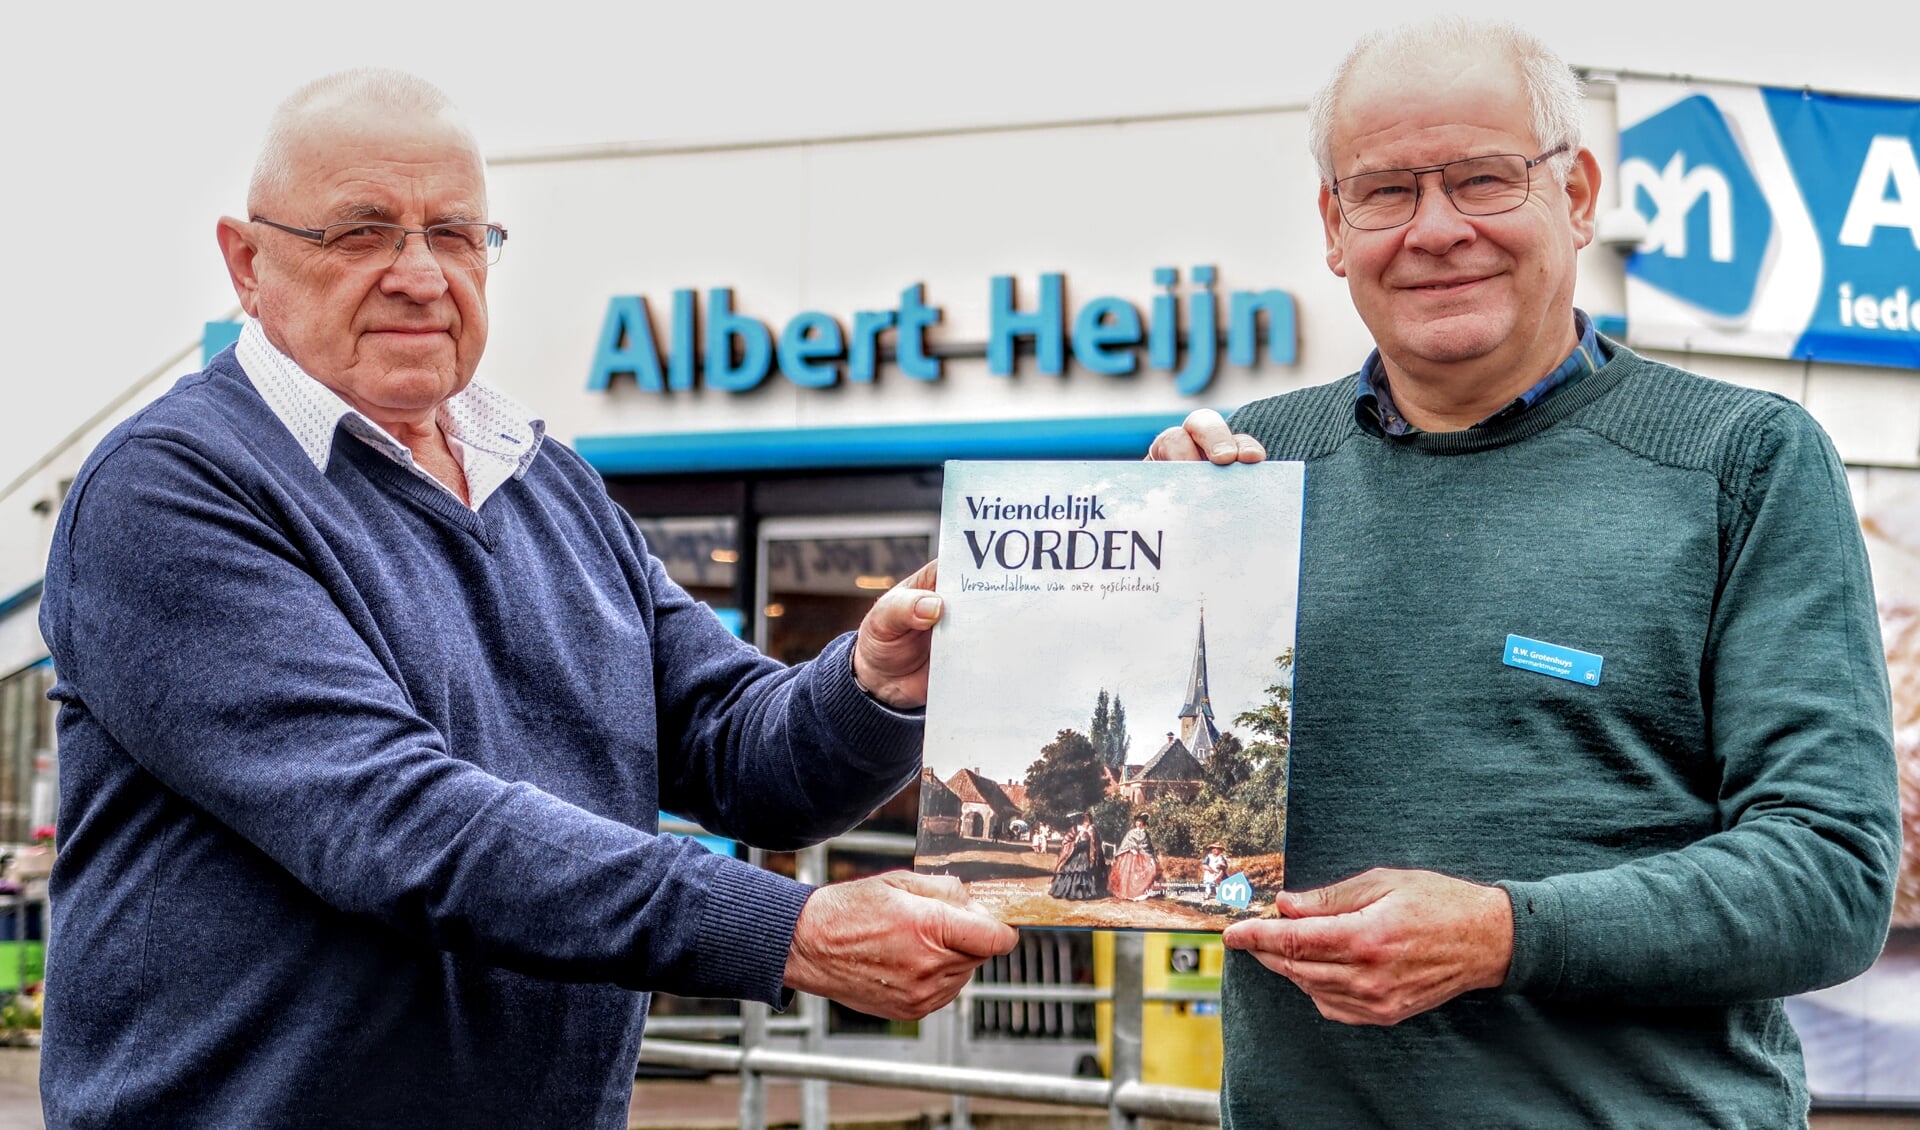 Voorzitter Rinus Ilbrink van Oud Vorden (links) en supermarkteigenaar Wilbert Grotenhuys zijn alvast trots op het boek 'Vriendelijk Vorden'. Foto: Luuk Stam